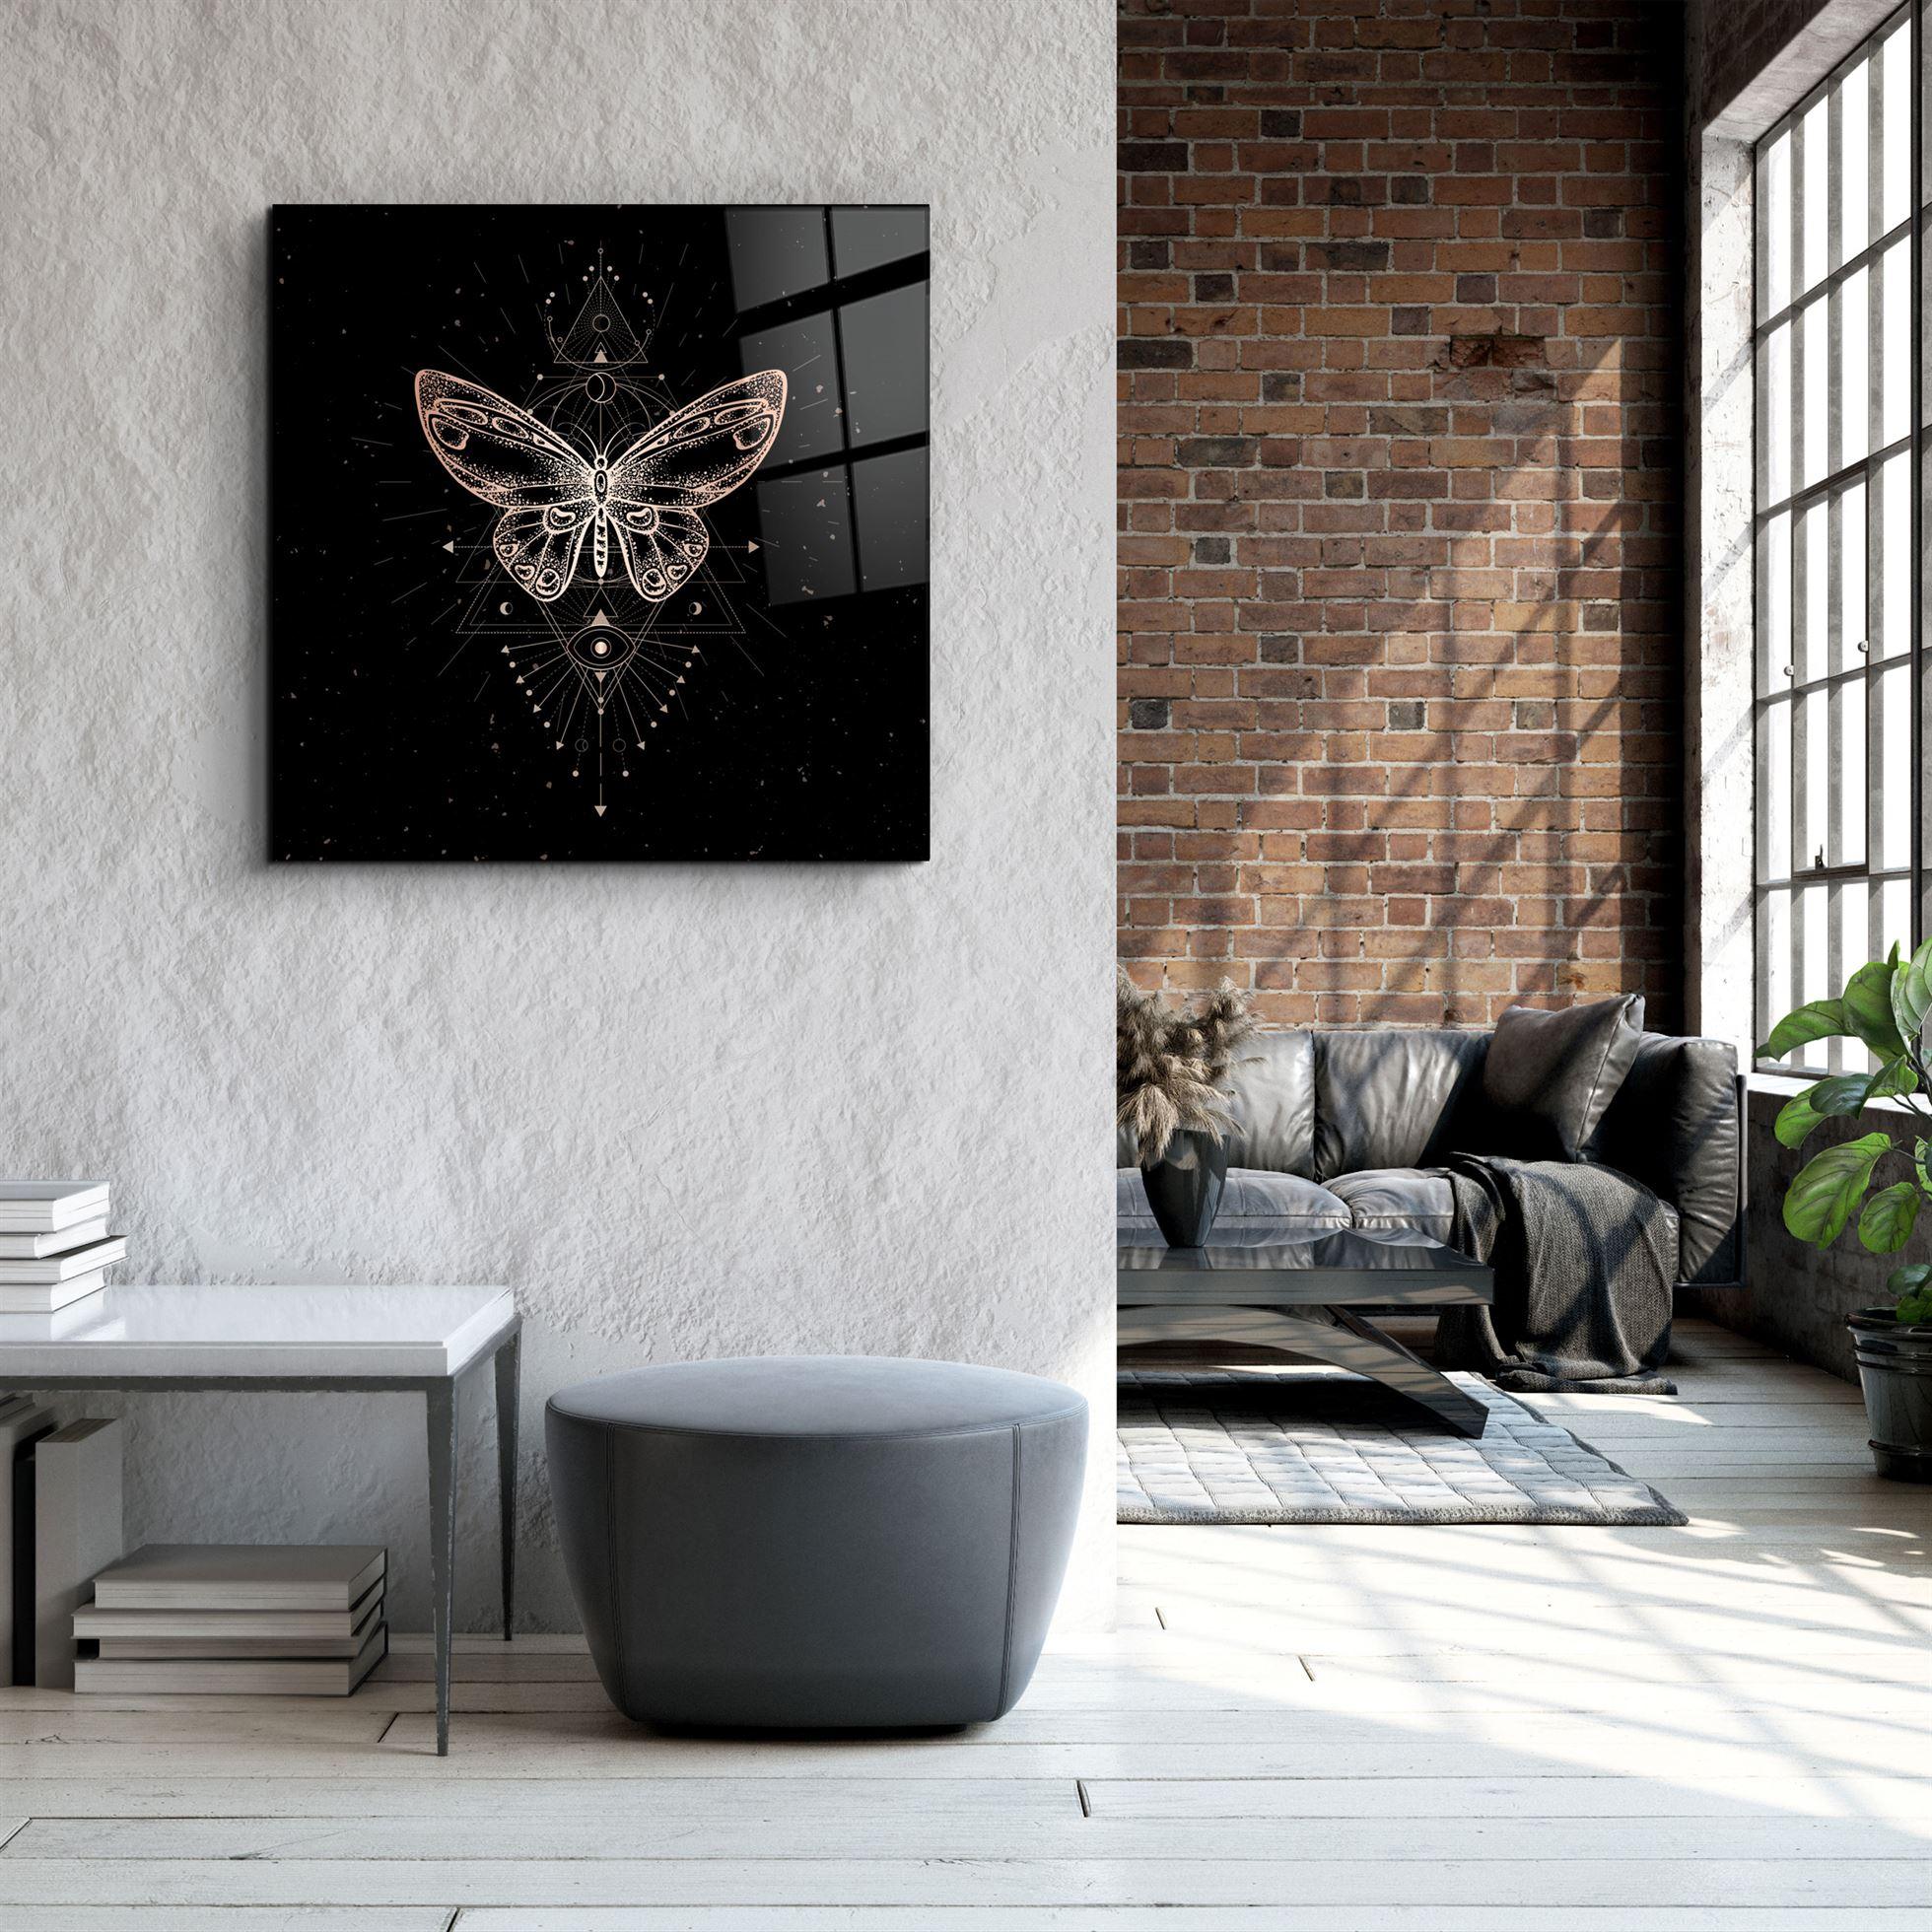 ・"Butterfly Signs"・Glass Wall Art - ArtDesigna Glass Printing Wall Art